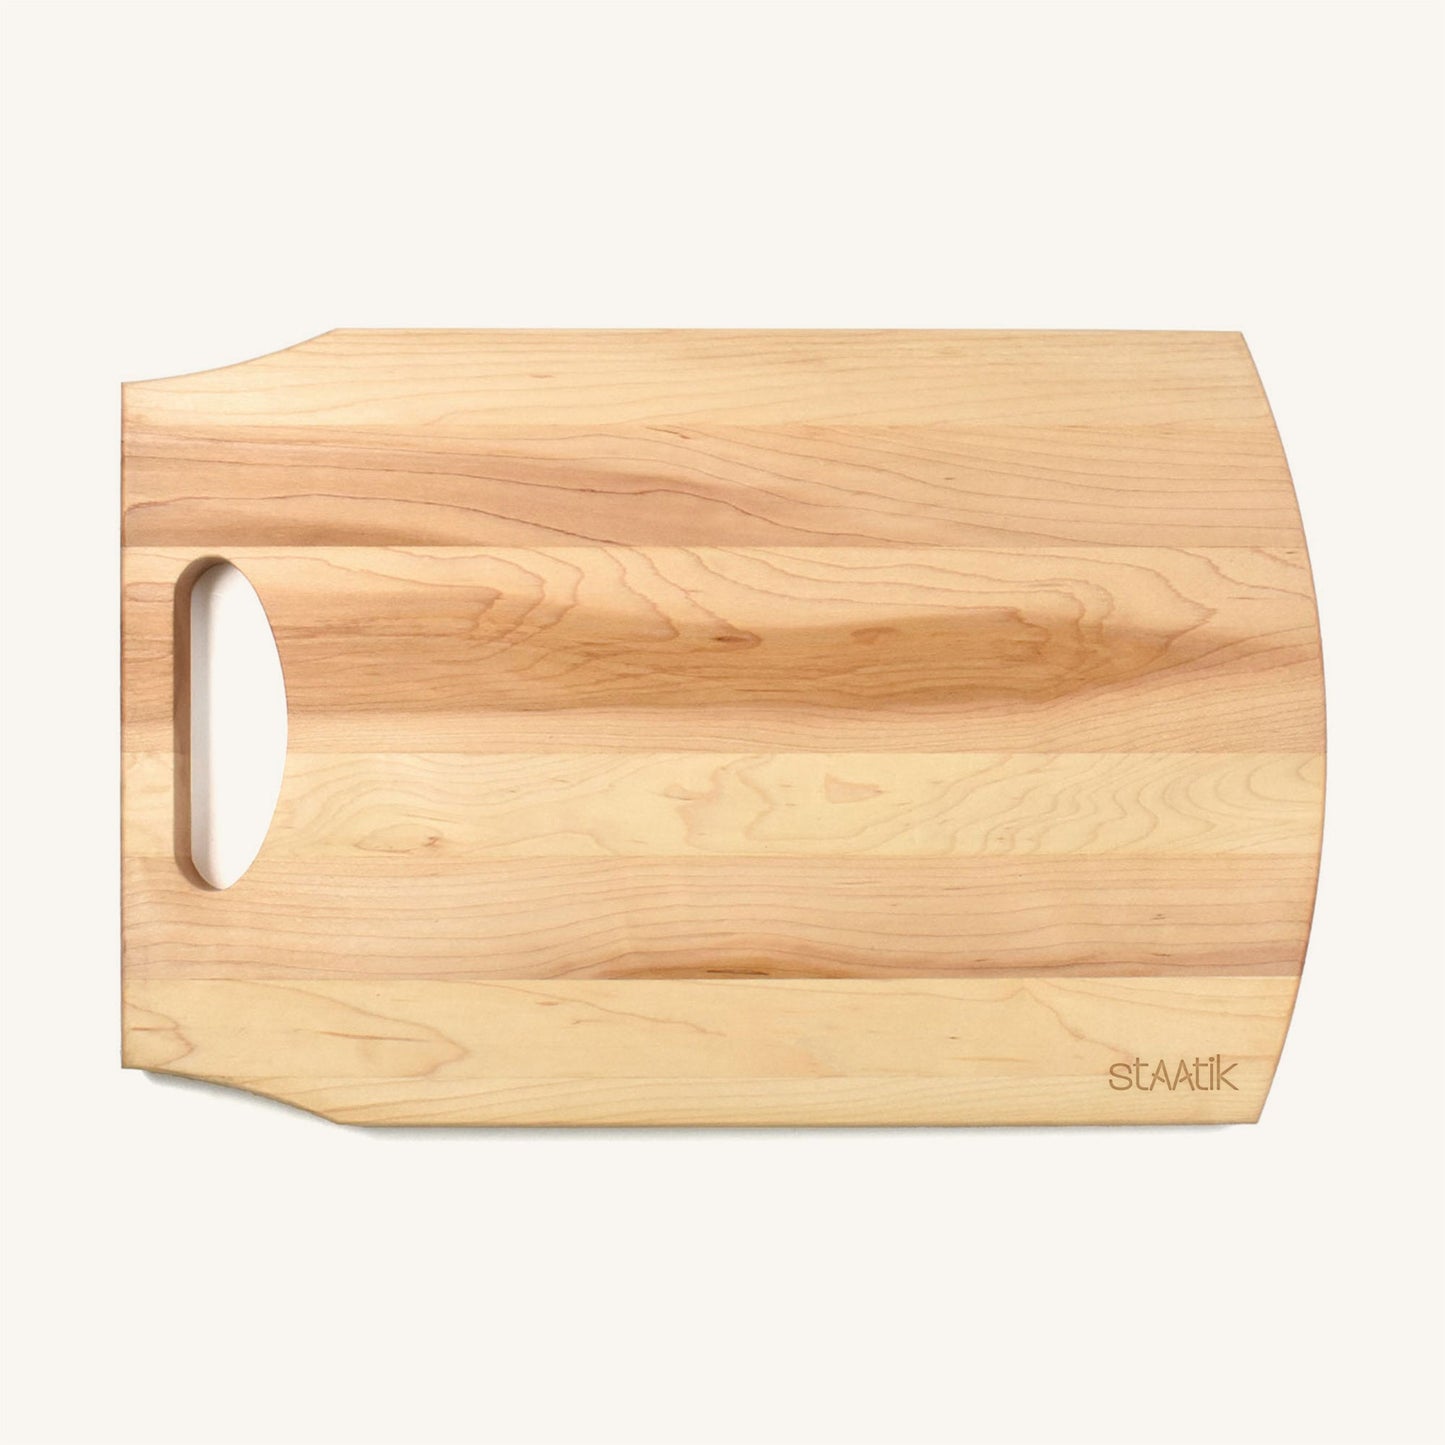 Tabla de cortar grande de madera con asa y diseños del Día de la Madre